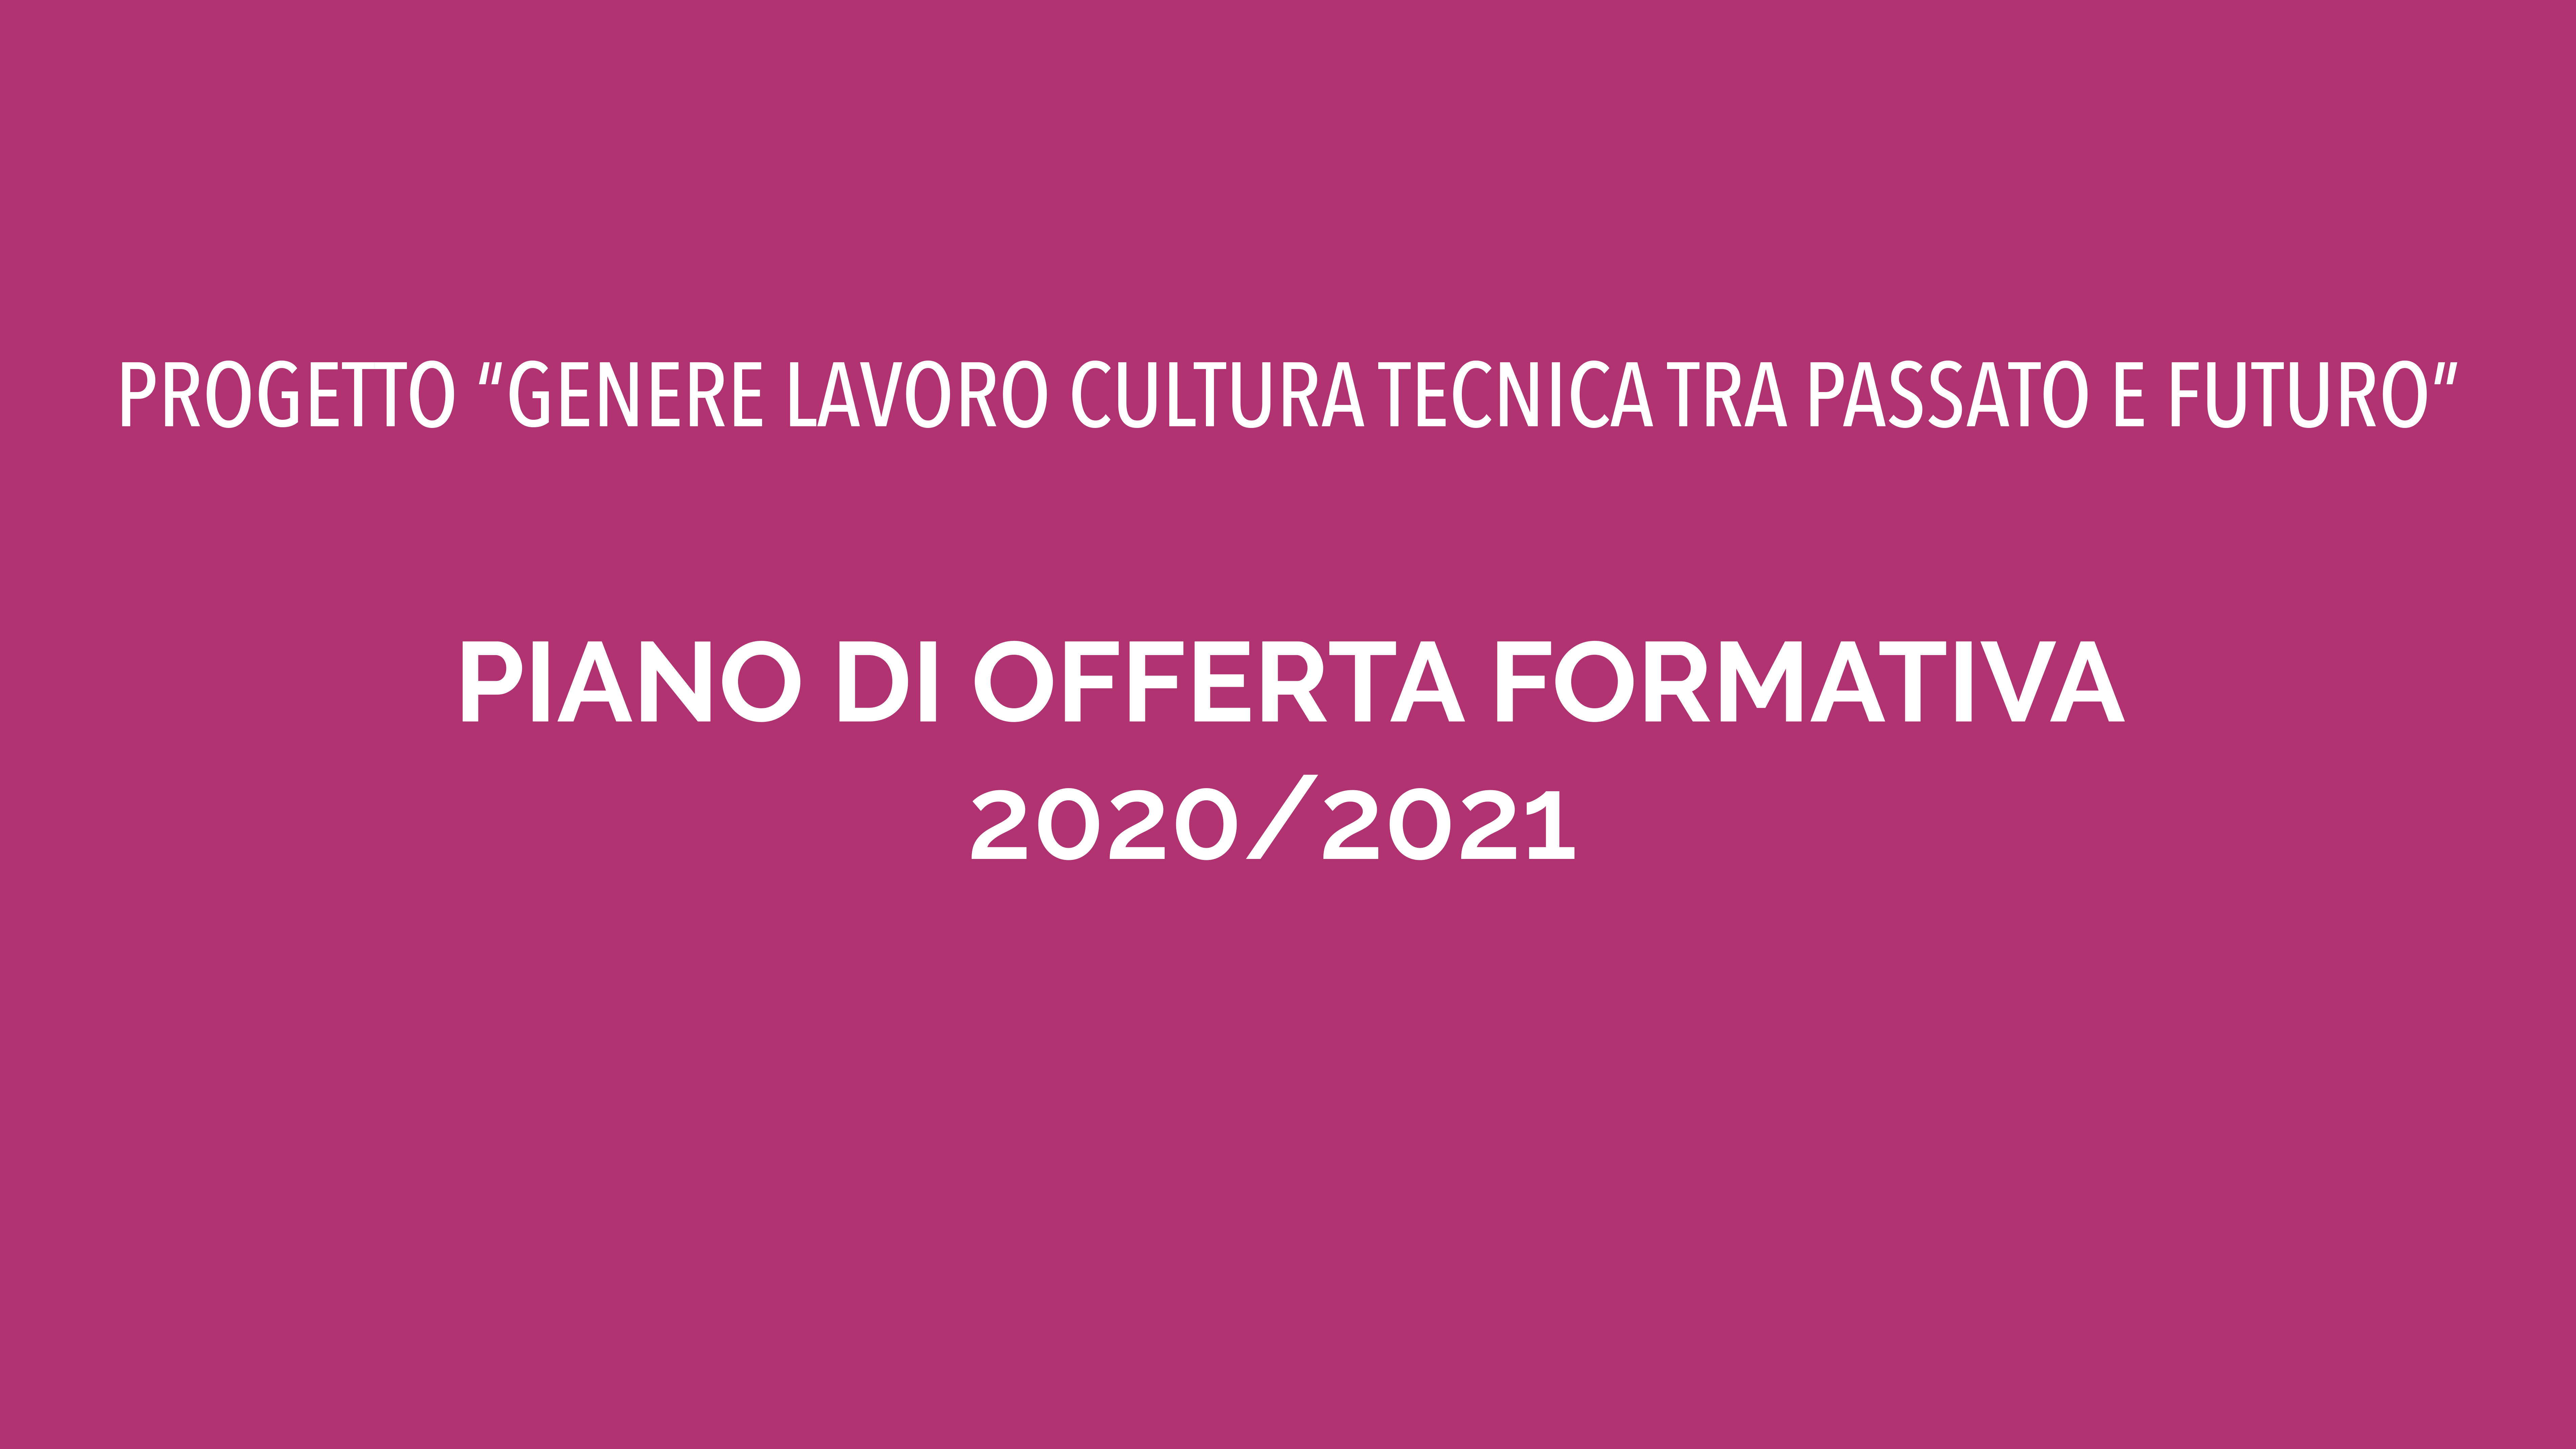 Piano di offerta formativa 2020/21